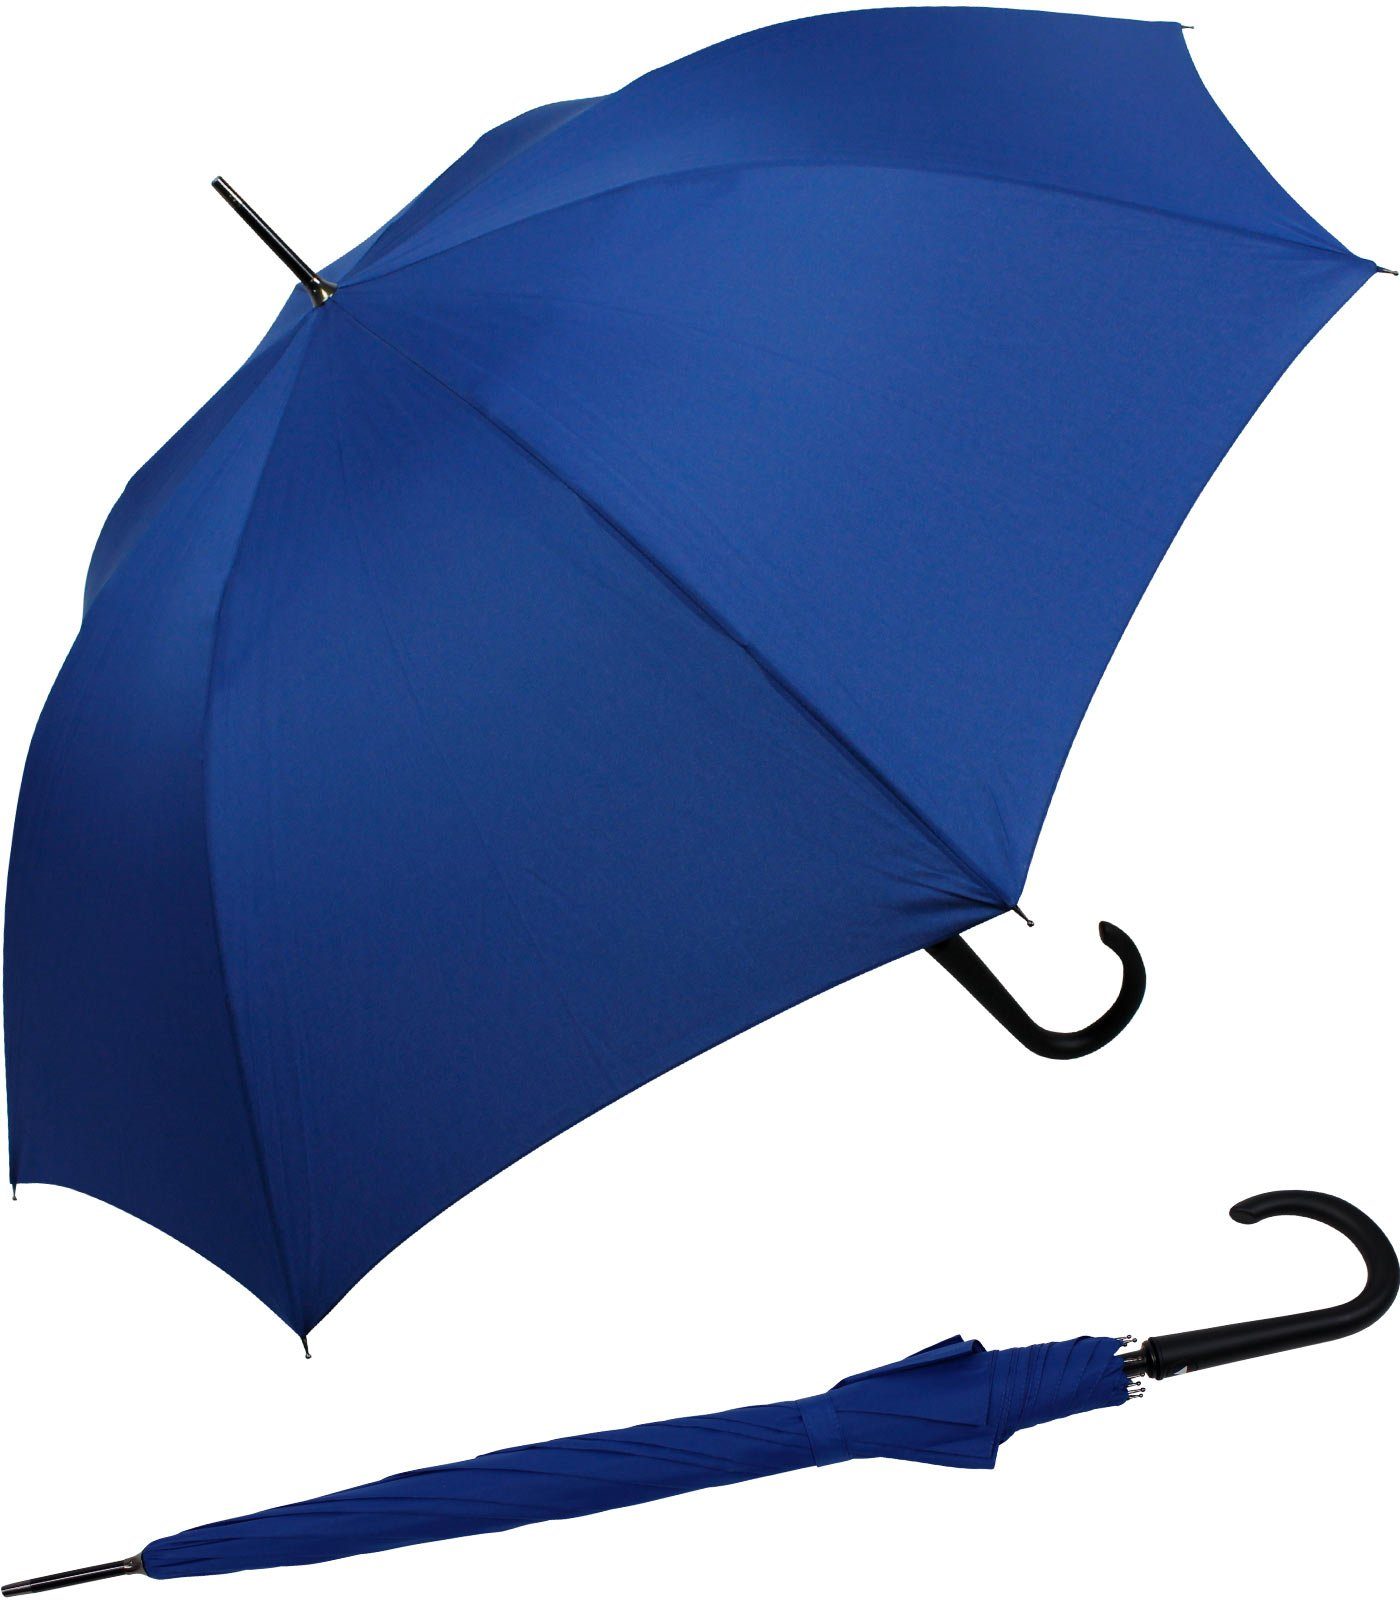 RS-Versand Langregenschirm großer stabiler Regenschirm mit Auf-Automatik, Stahl-Fiberglas-Gestell, integrierter Auslöseknopf royal-blau